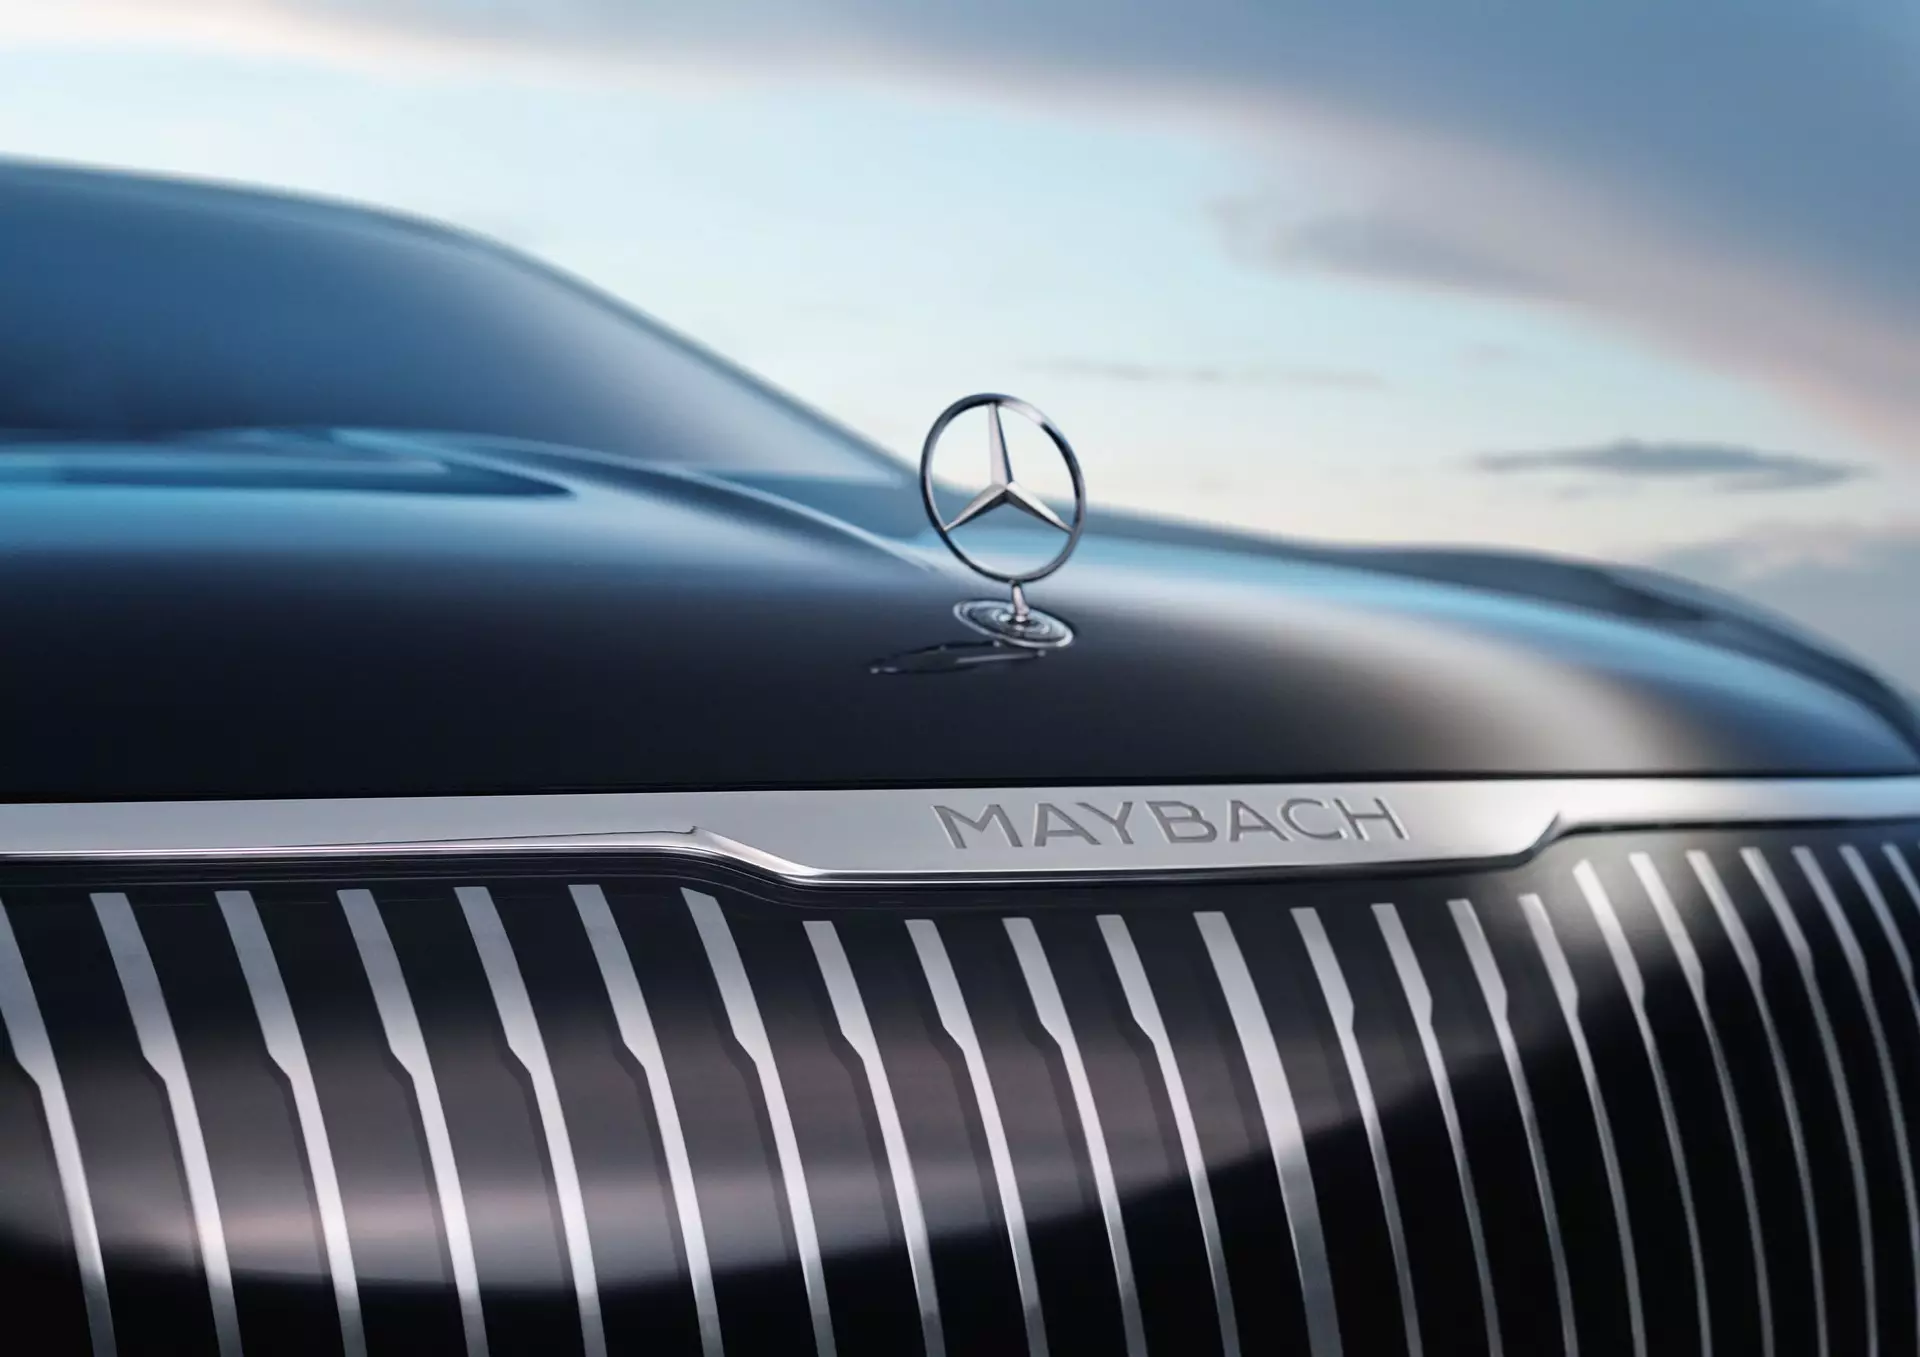 Mercedes-Maybach EQS